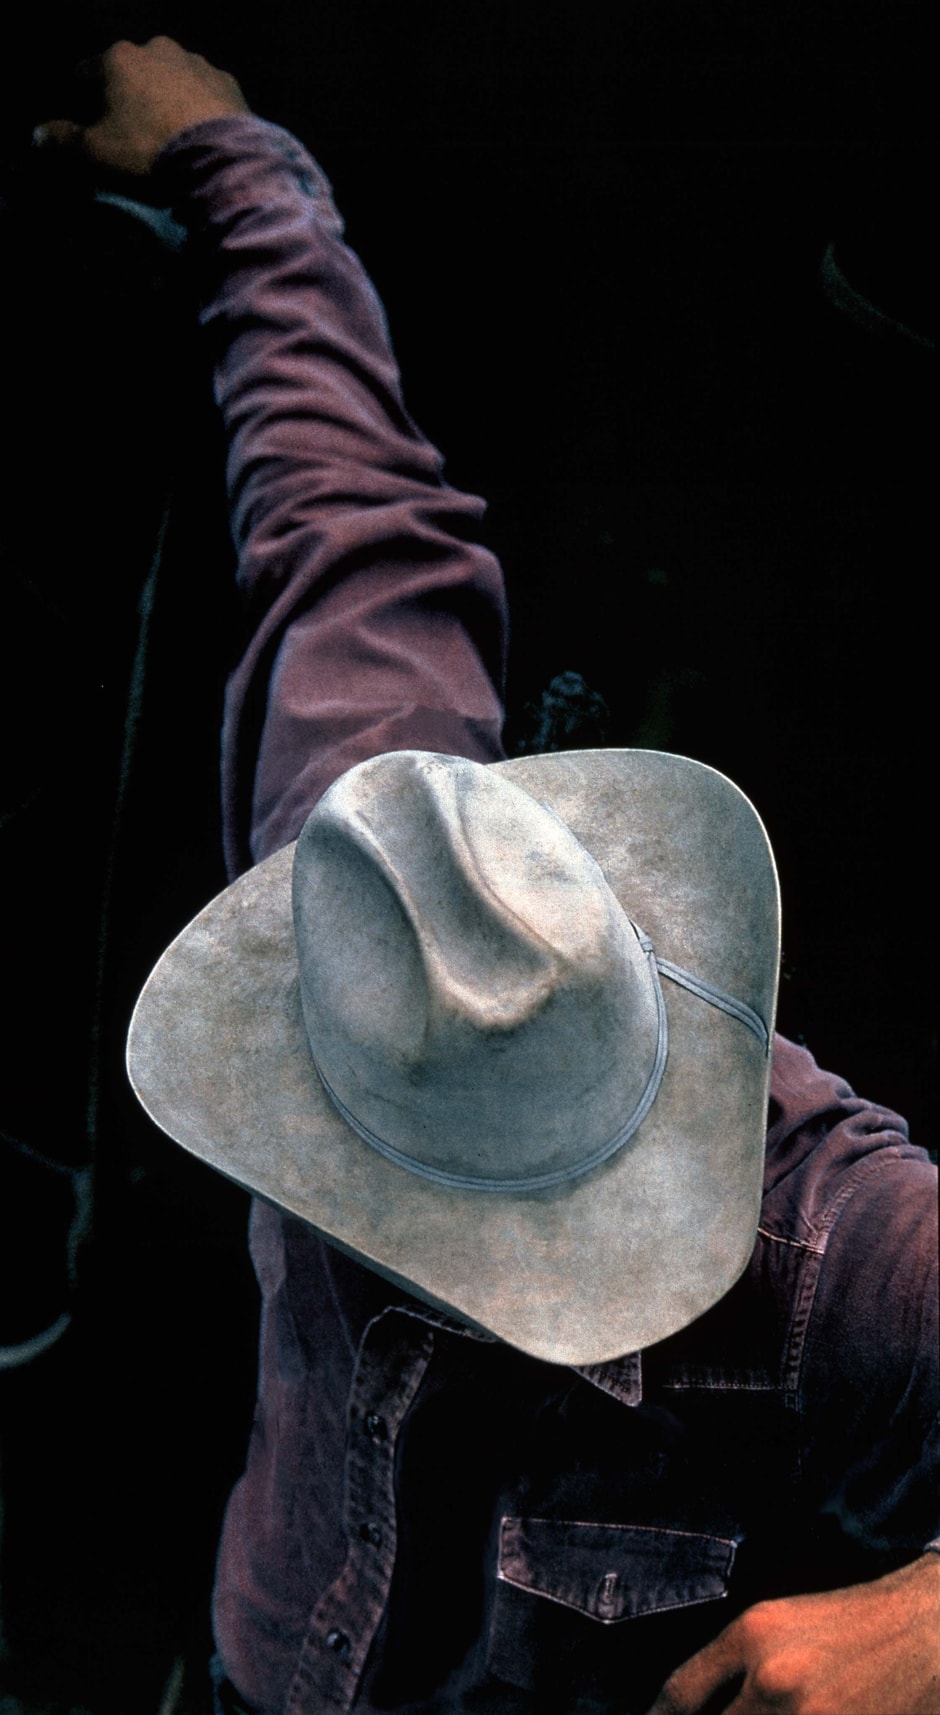 Untitled (Cowboy), 1999  ektacolour photograph  175.2 x 104.0 x 5.0 cm 69 x 41 x 2 in.